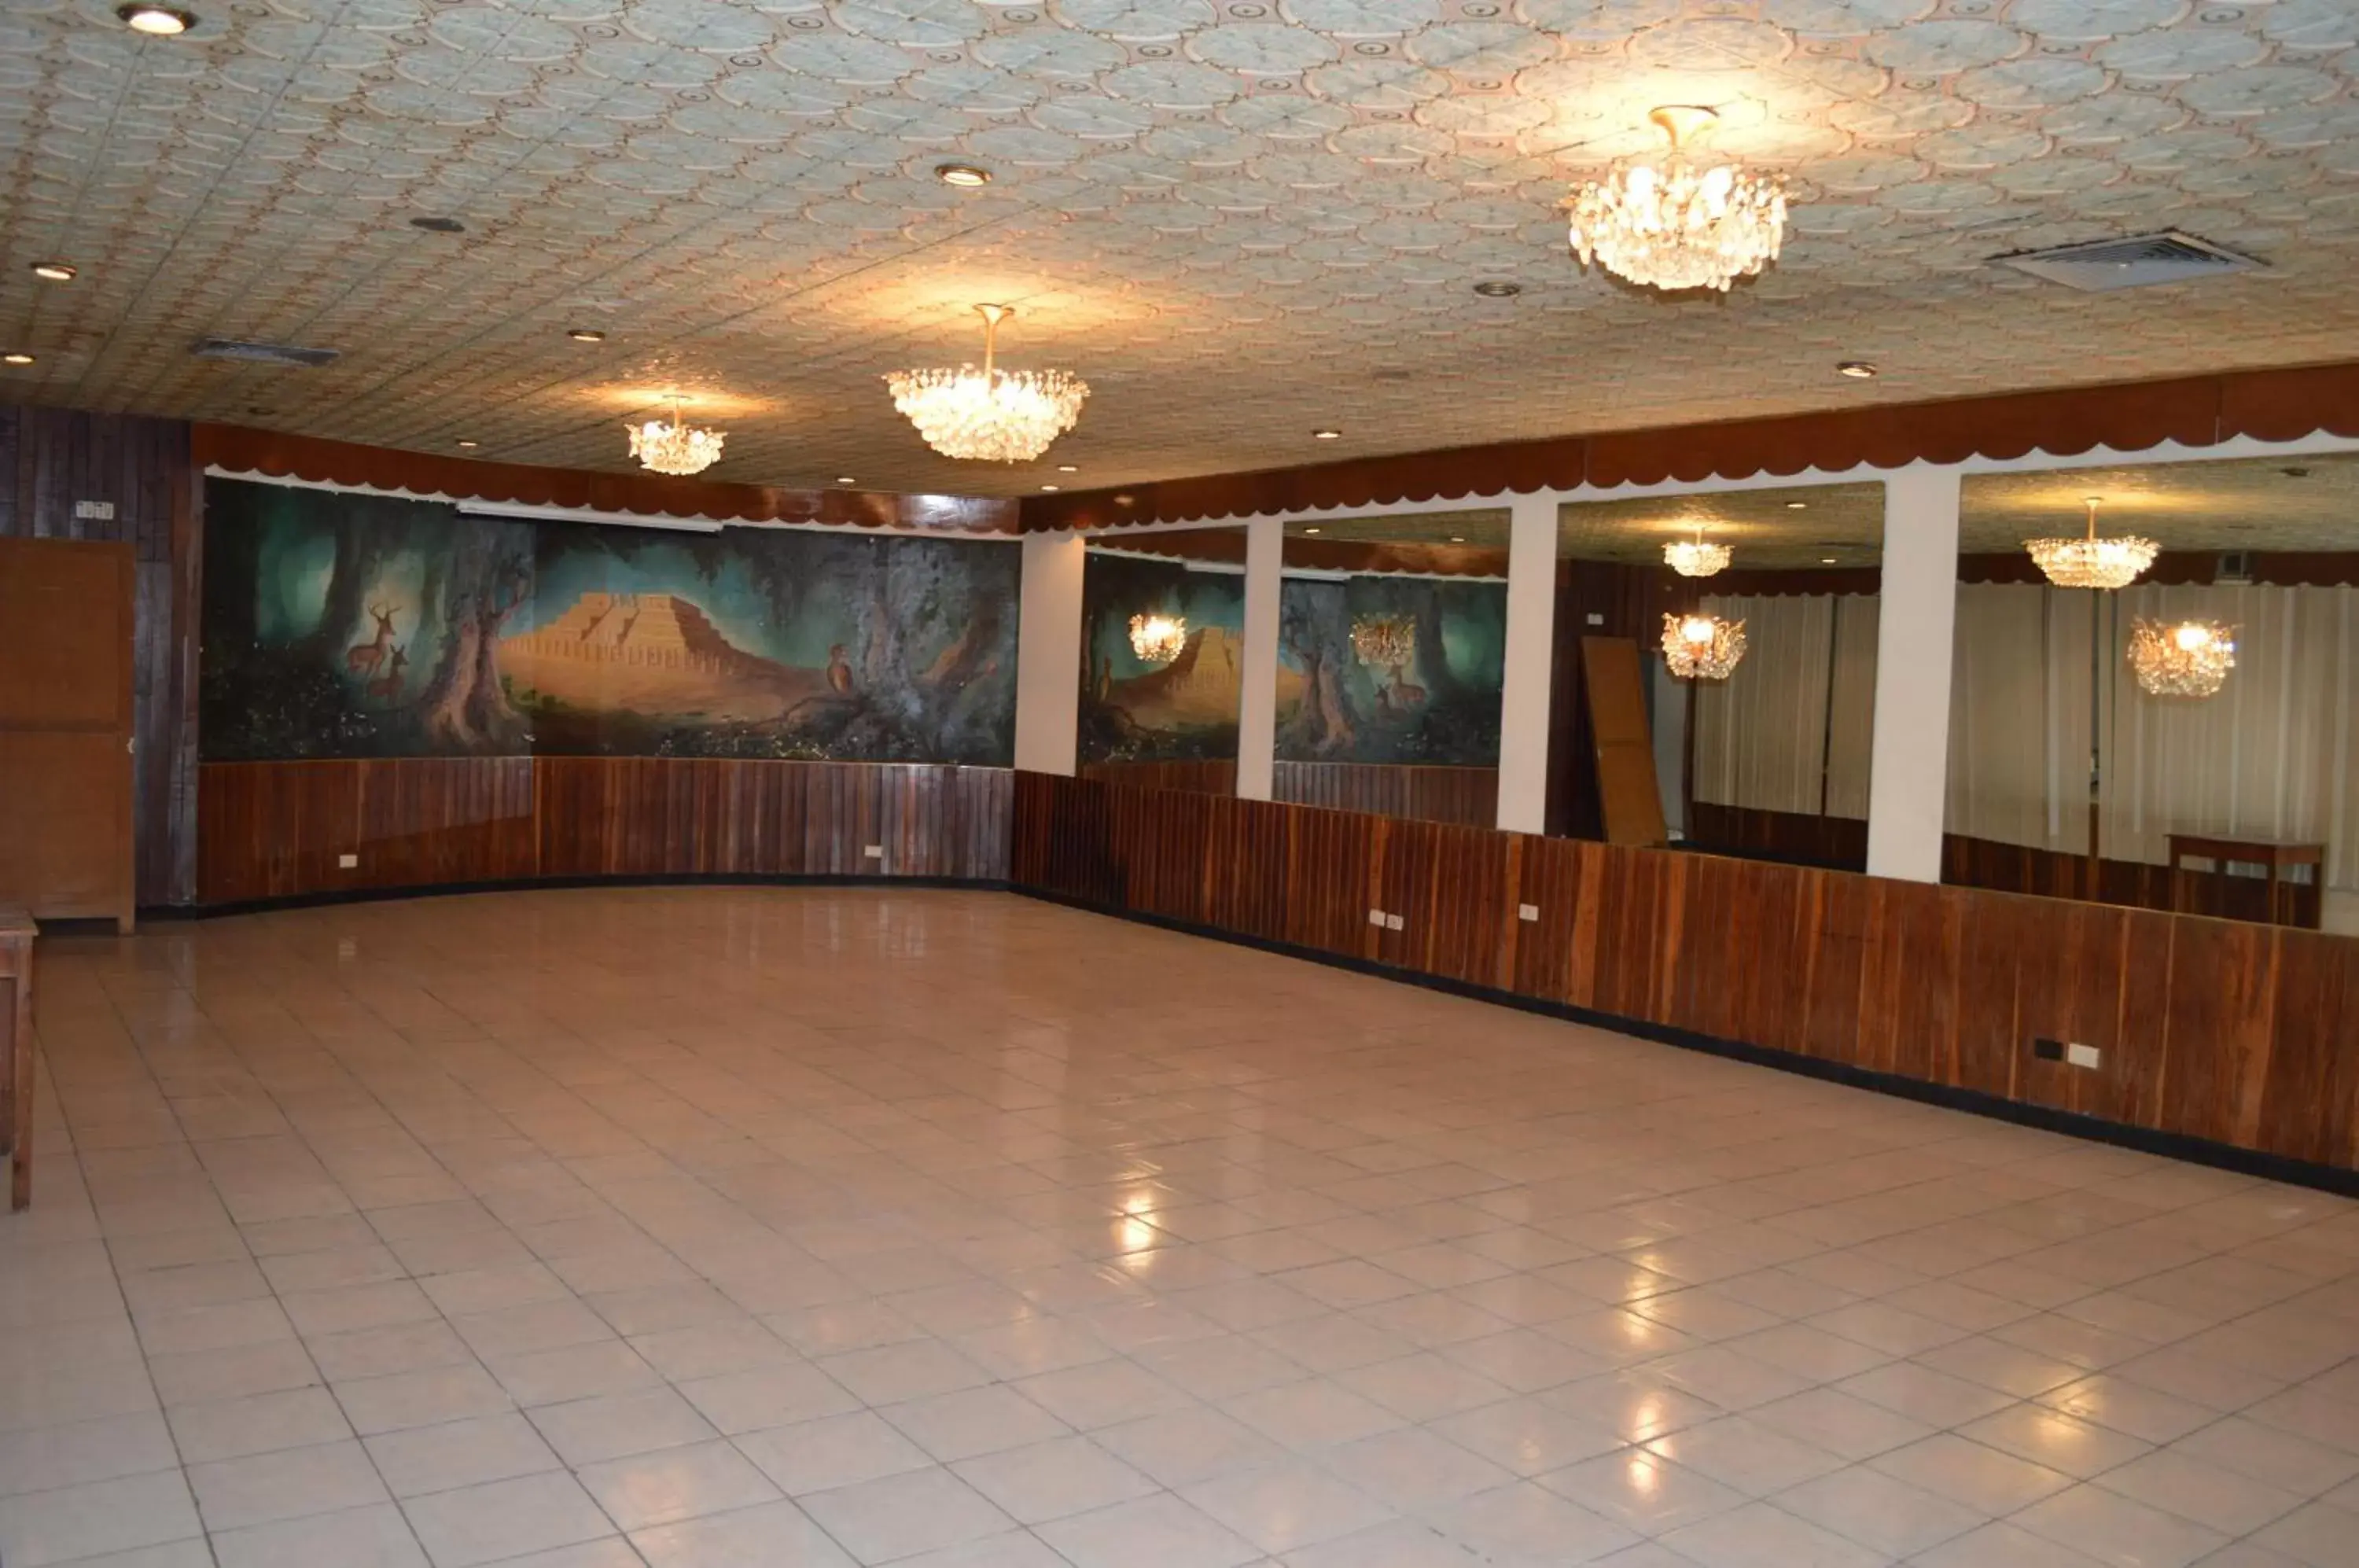 Lounge or bar, Lobby/Reception in Hotel Colon Merida